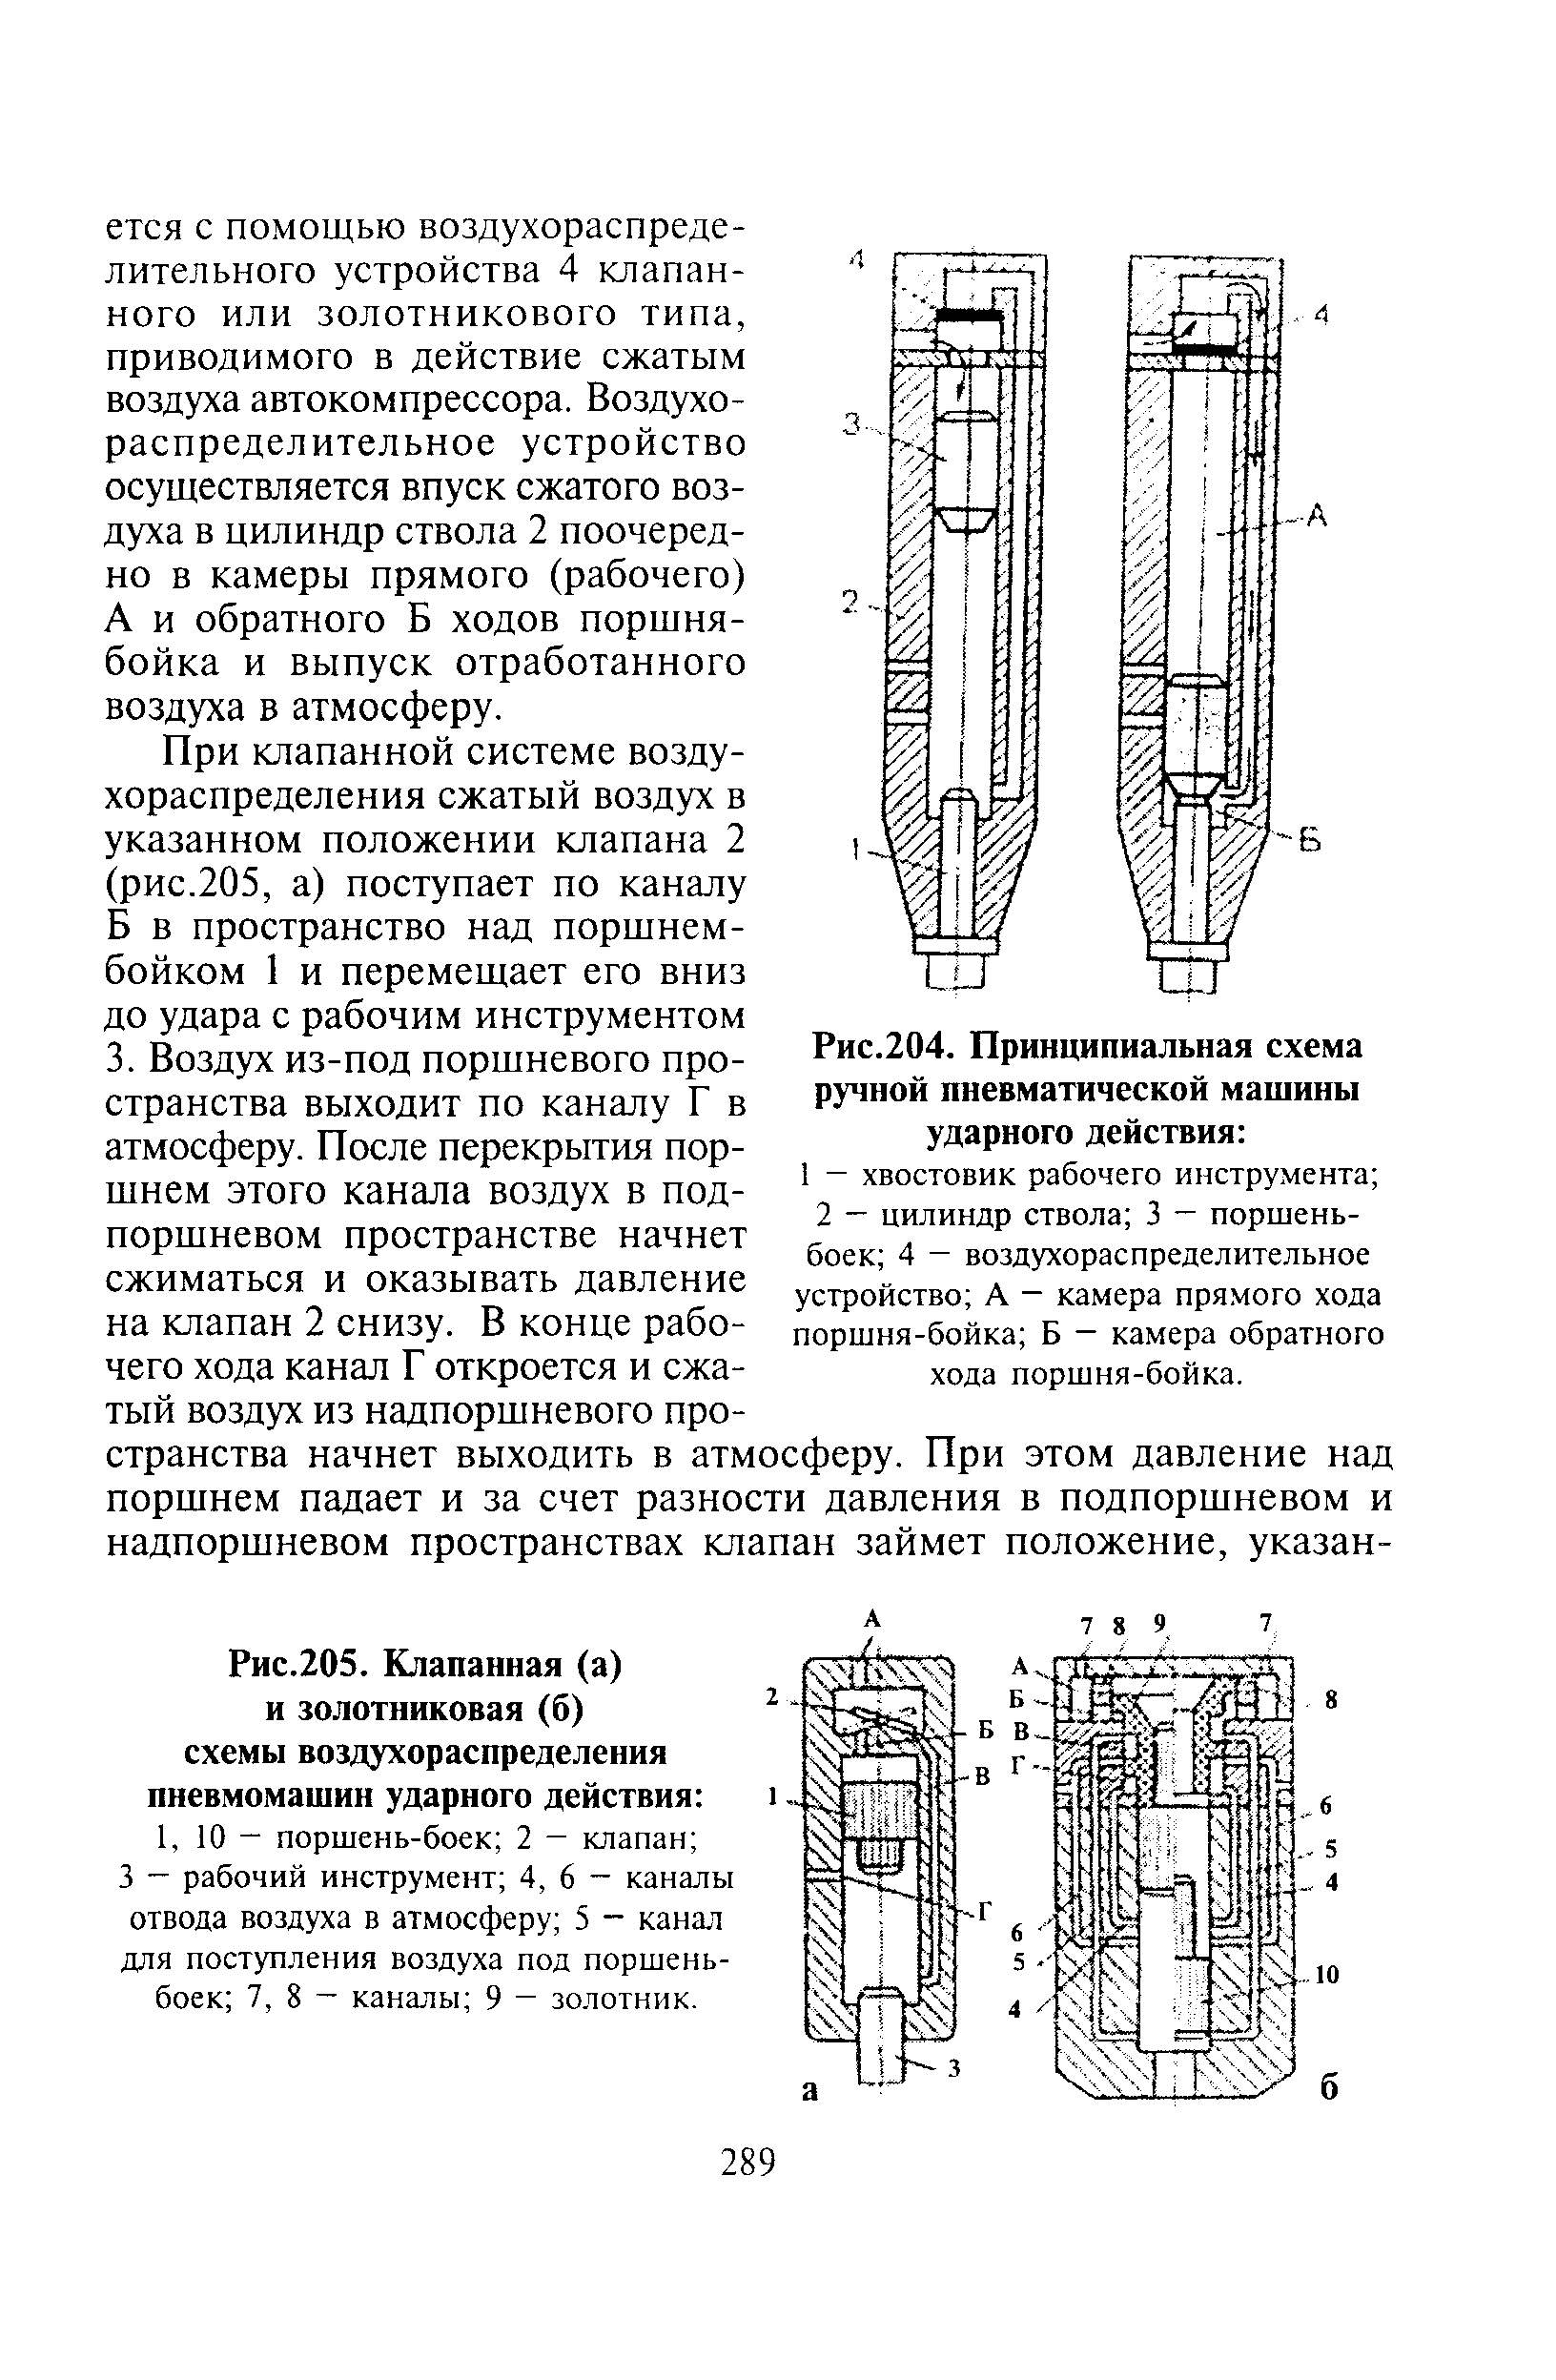 Рис.205. Клапанная (а) и золотниковая (б) схемы воздухораспределения пневмомашин ударного действия 
